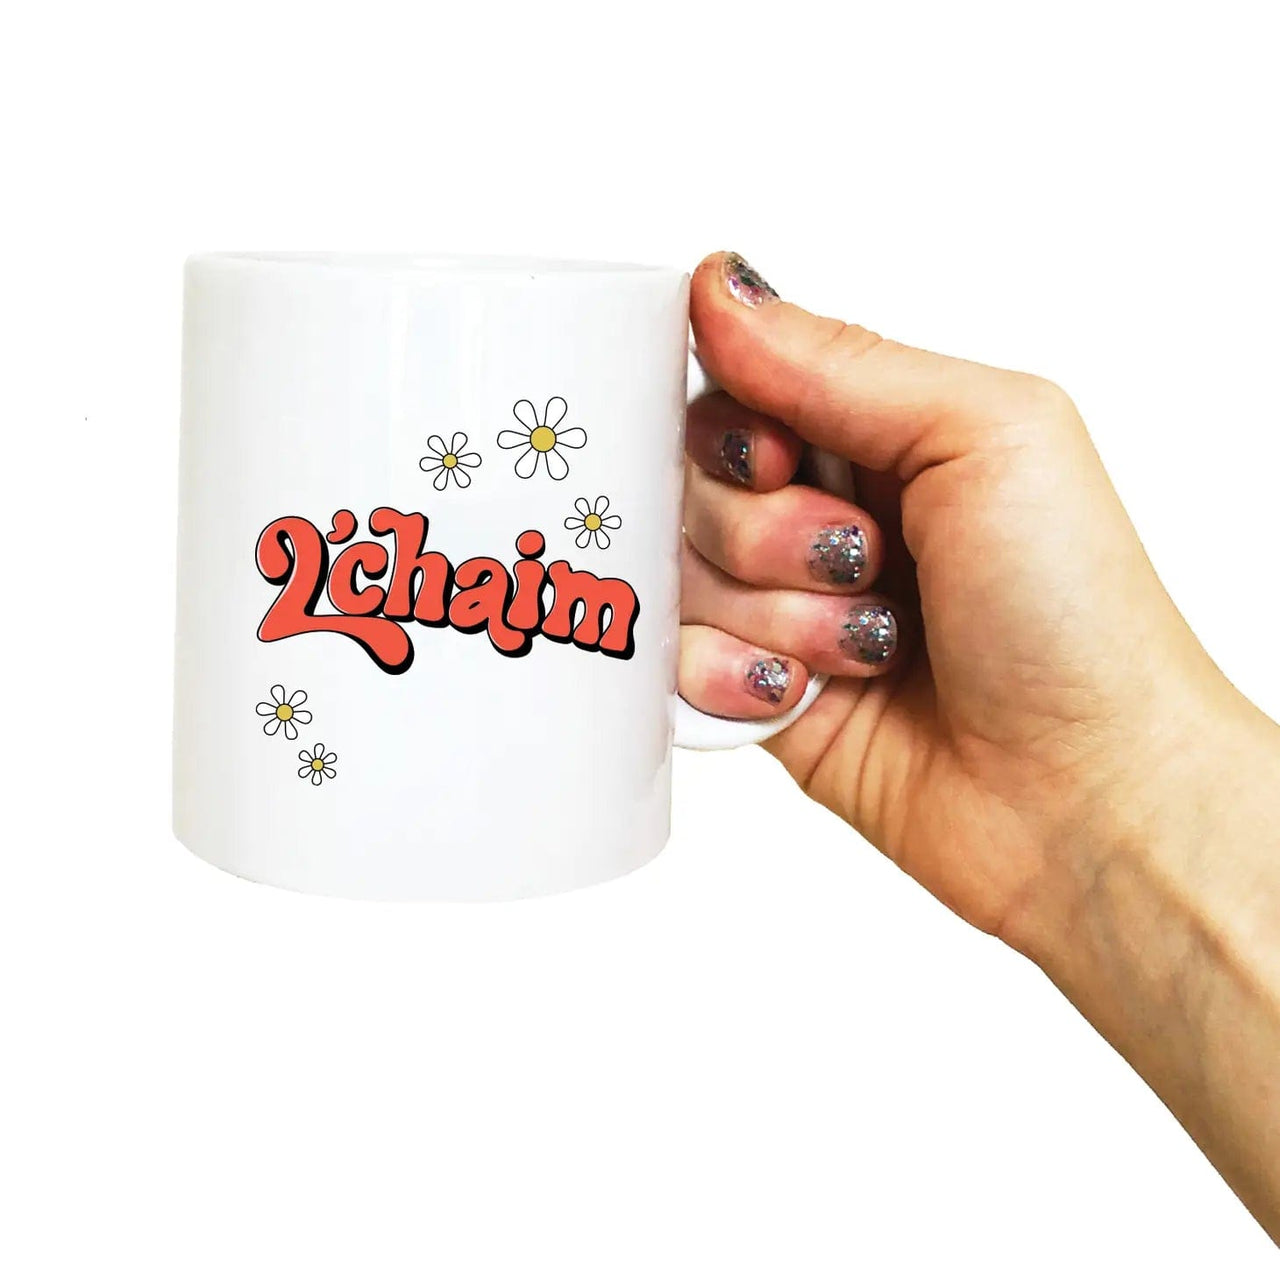 Drawn Goods Mugs Daisies L'Chaim Coffee Mug